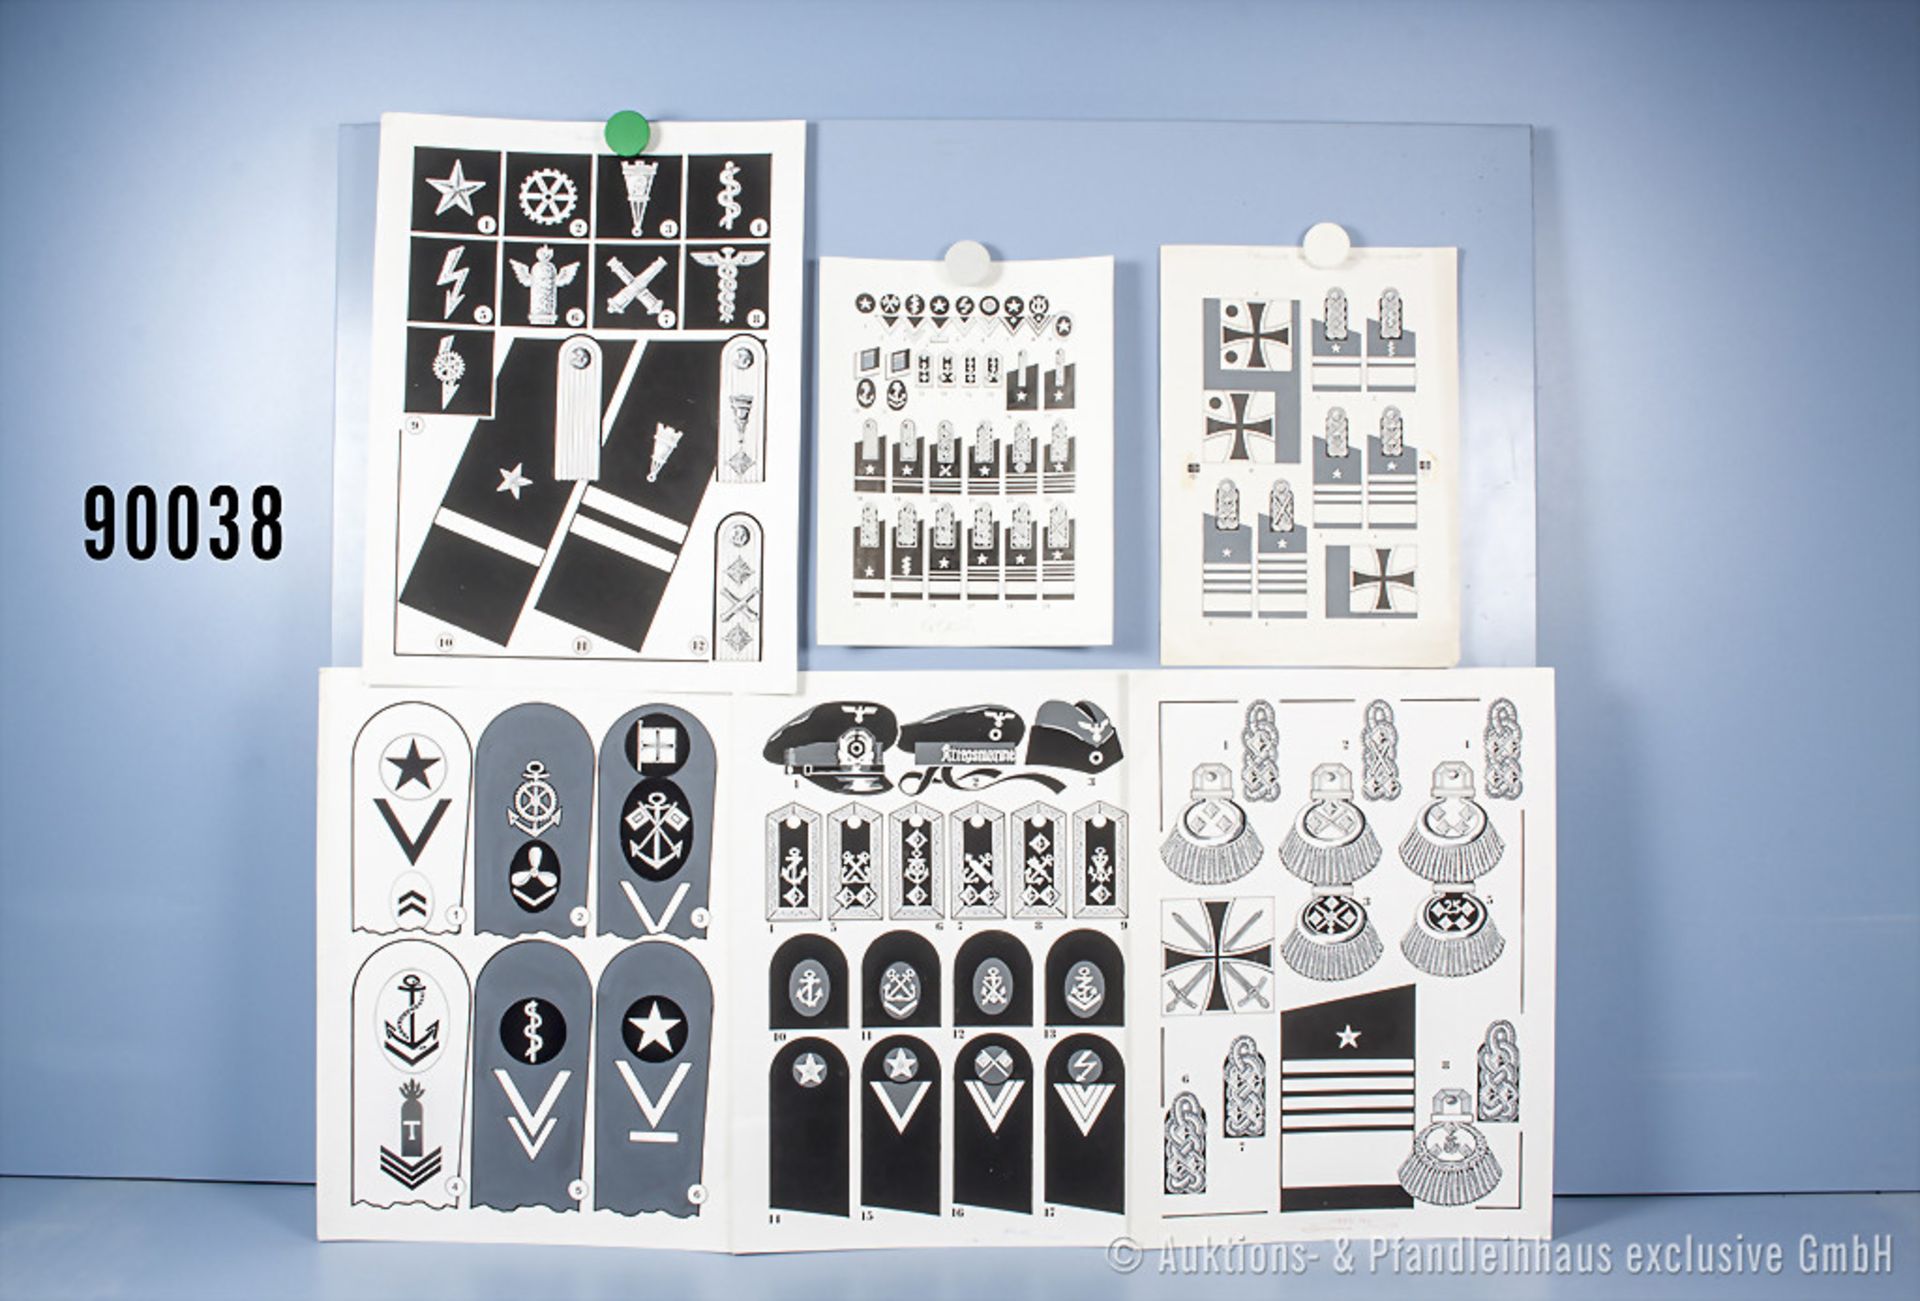 Konv. 10 originale schwarz/weiß Zeichnungen zum Thema Uniformierung und Effekten der ...